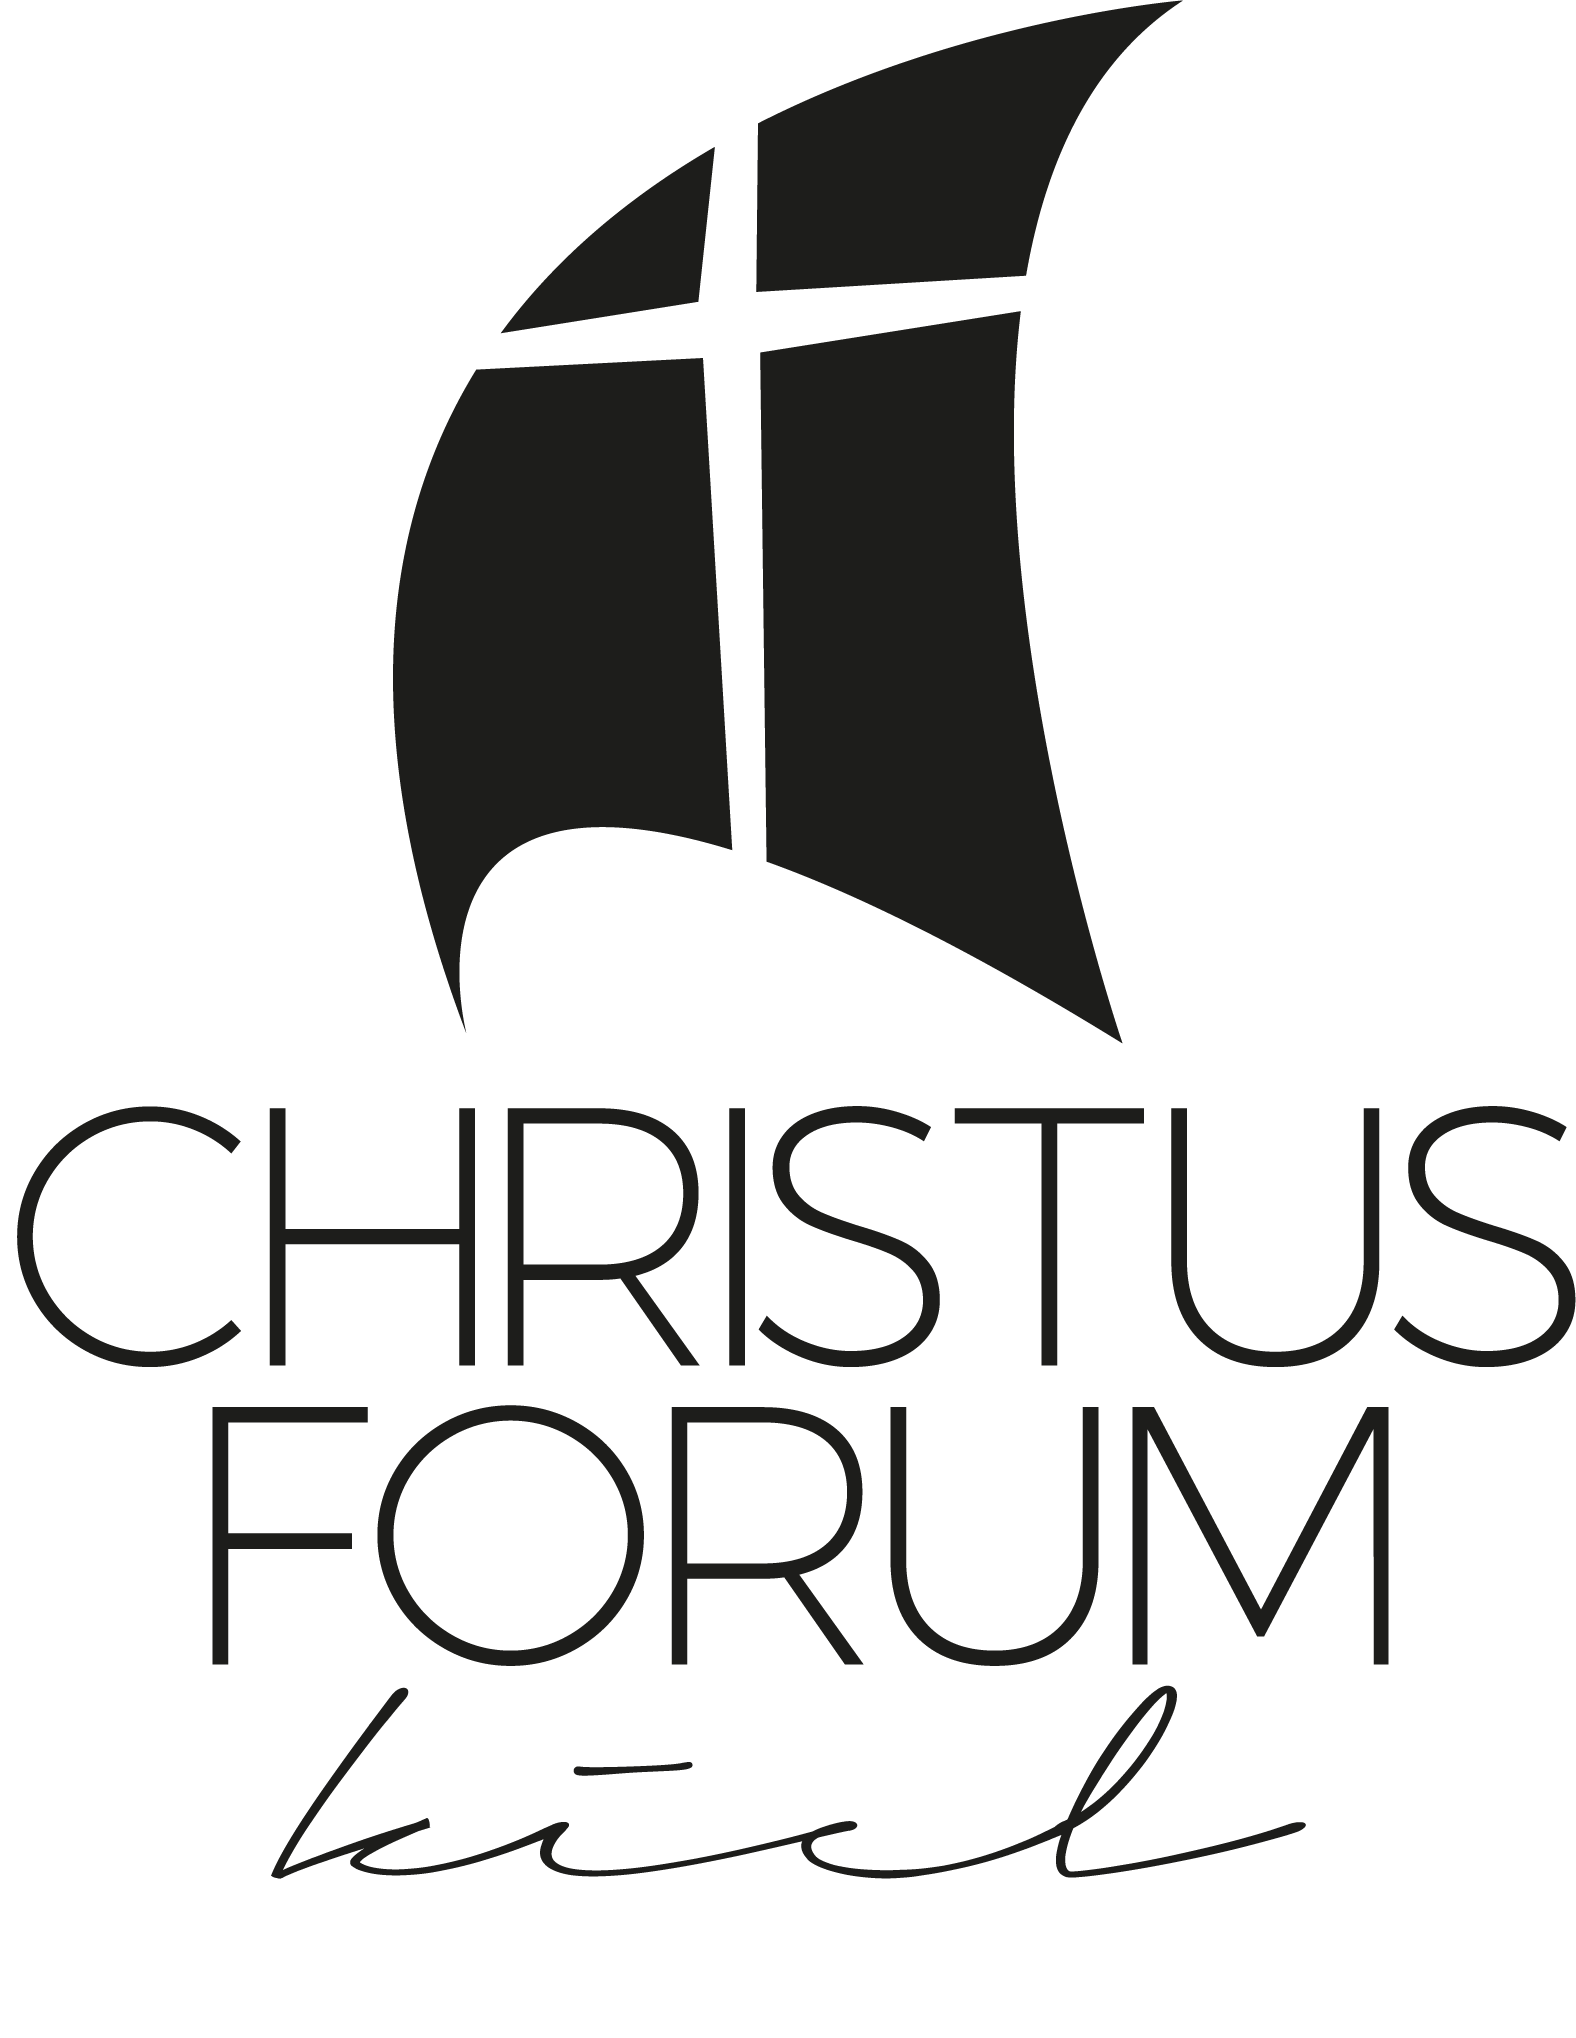 Segel mit Kreuz im Wind, dadrunter steht Christus-Forum Kiel